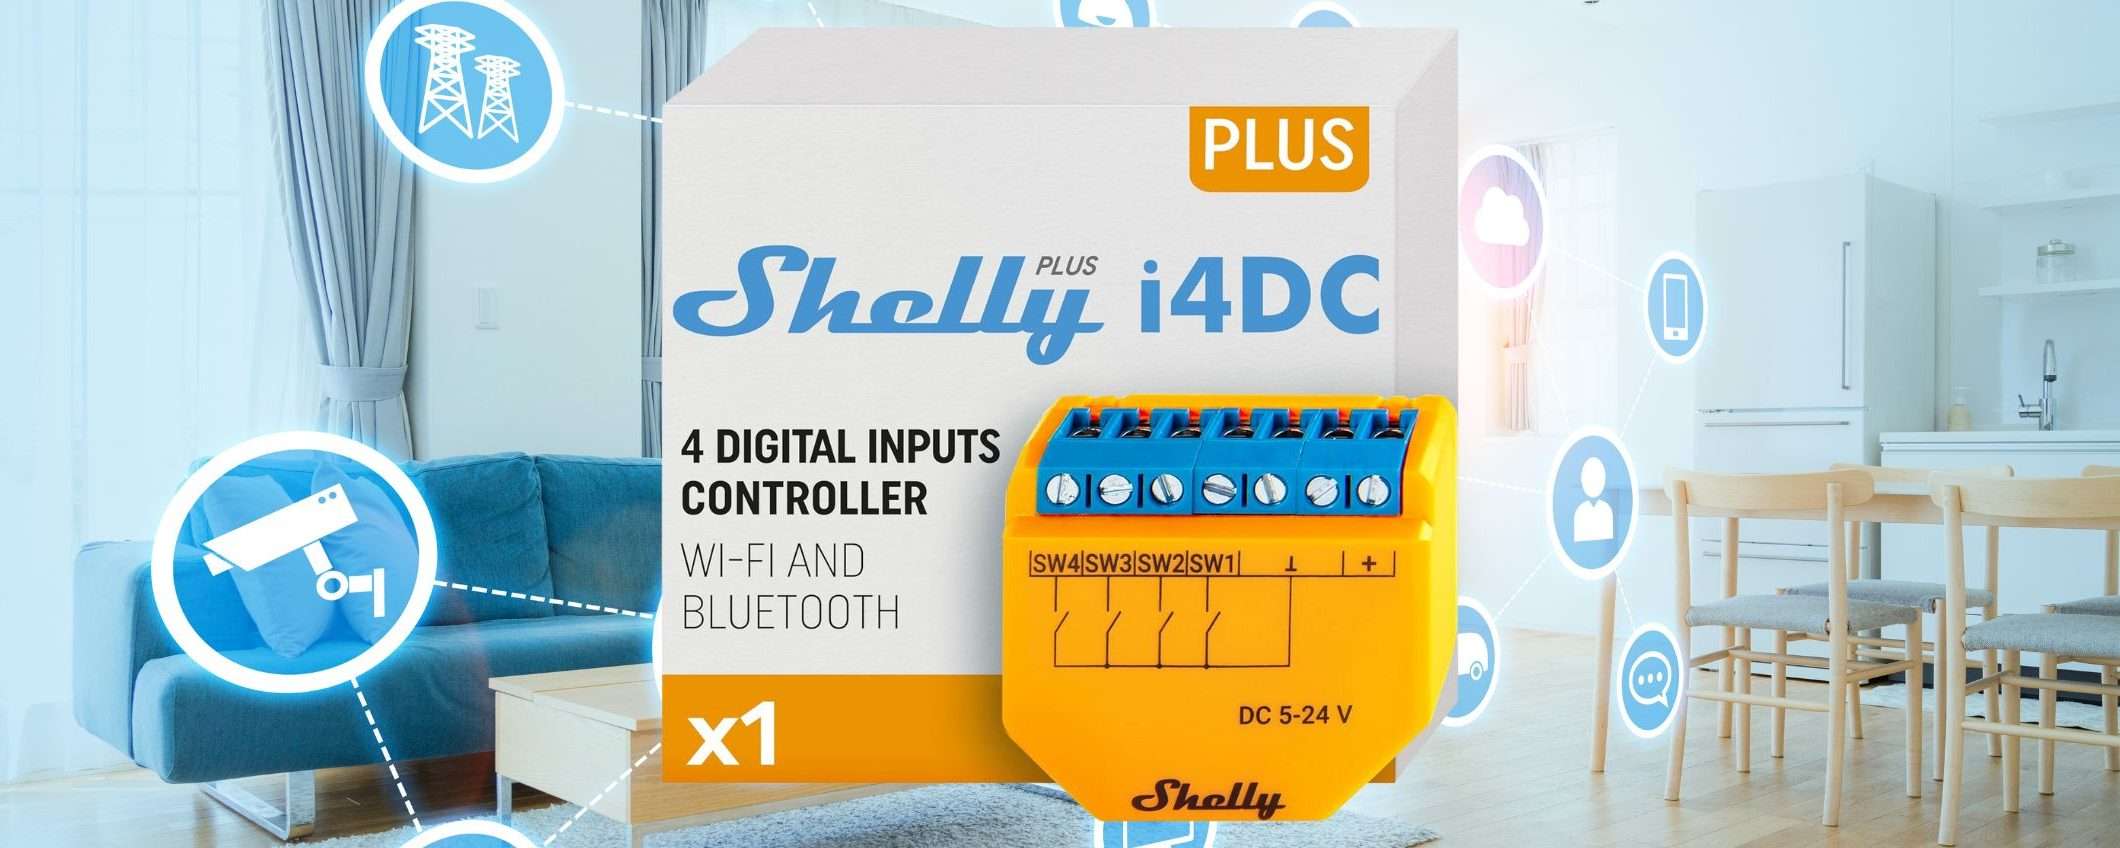 Domotica FACILE con Shelly Plus i4 DC, il controllore WiFi e bluetooth smart in sconto Amazon